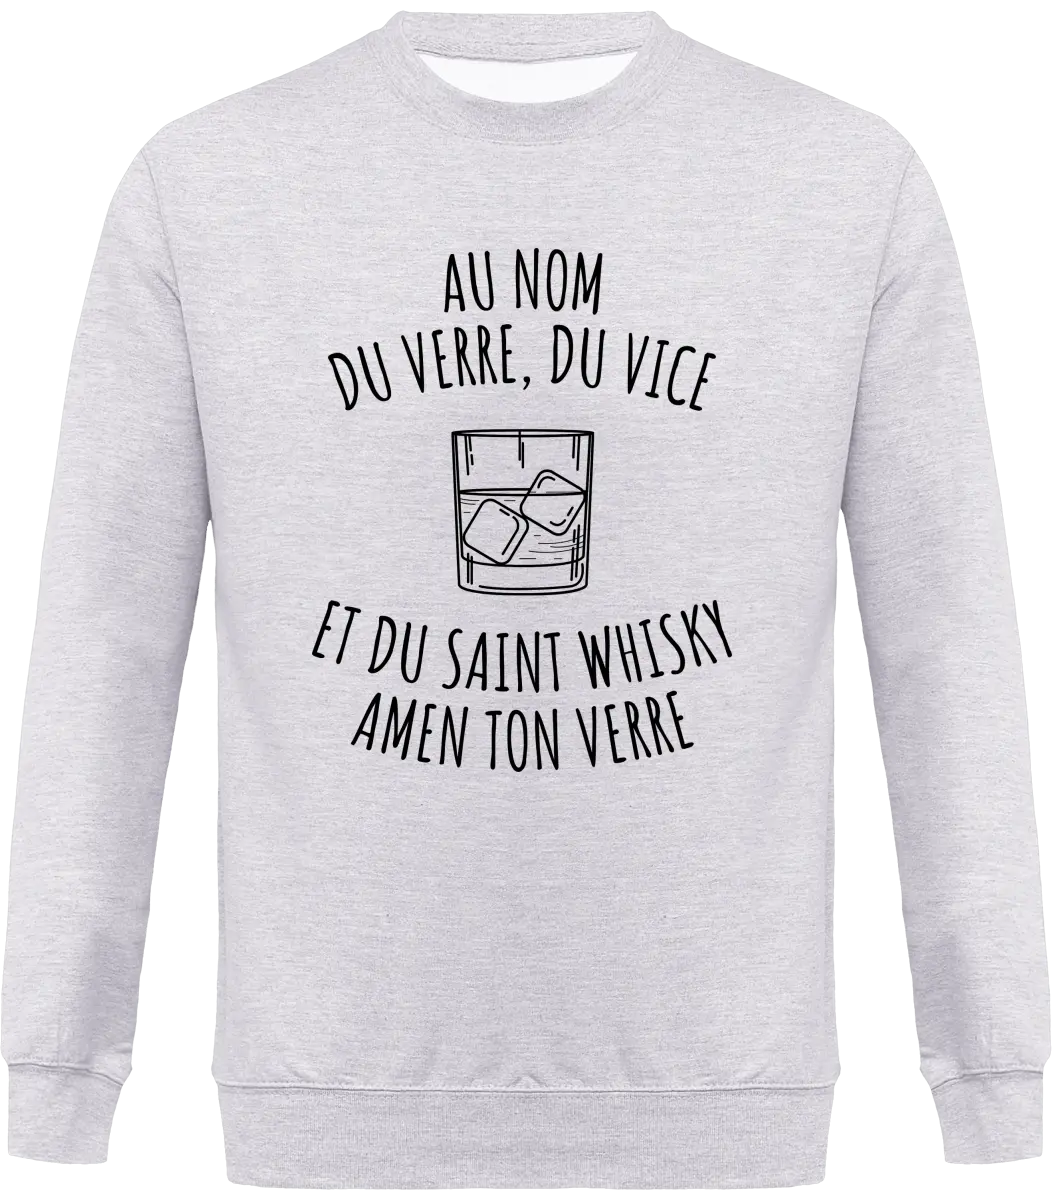 Sweat Whisky "Au nom du verre, du vice et du saint whisky amen ton verre" | Mixte - French Humour